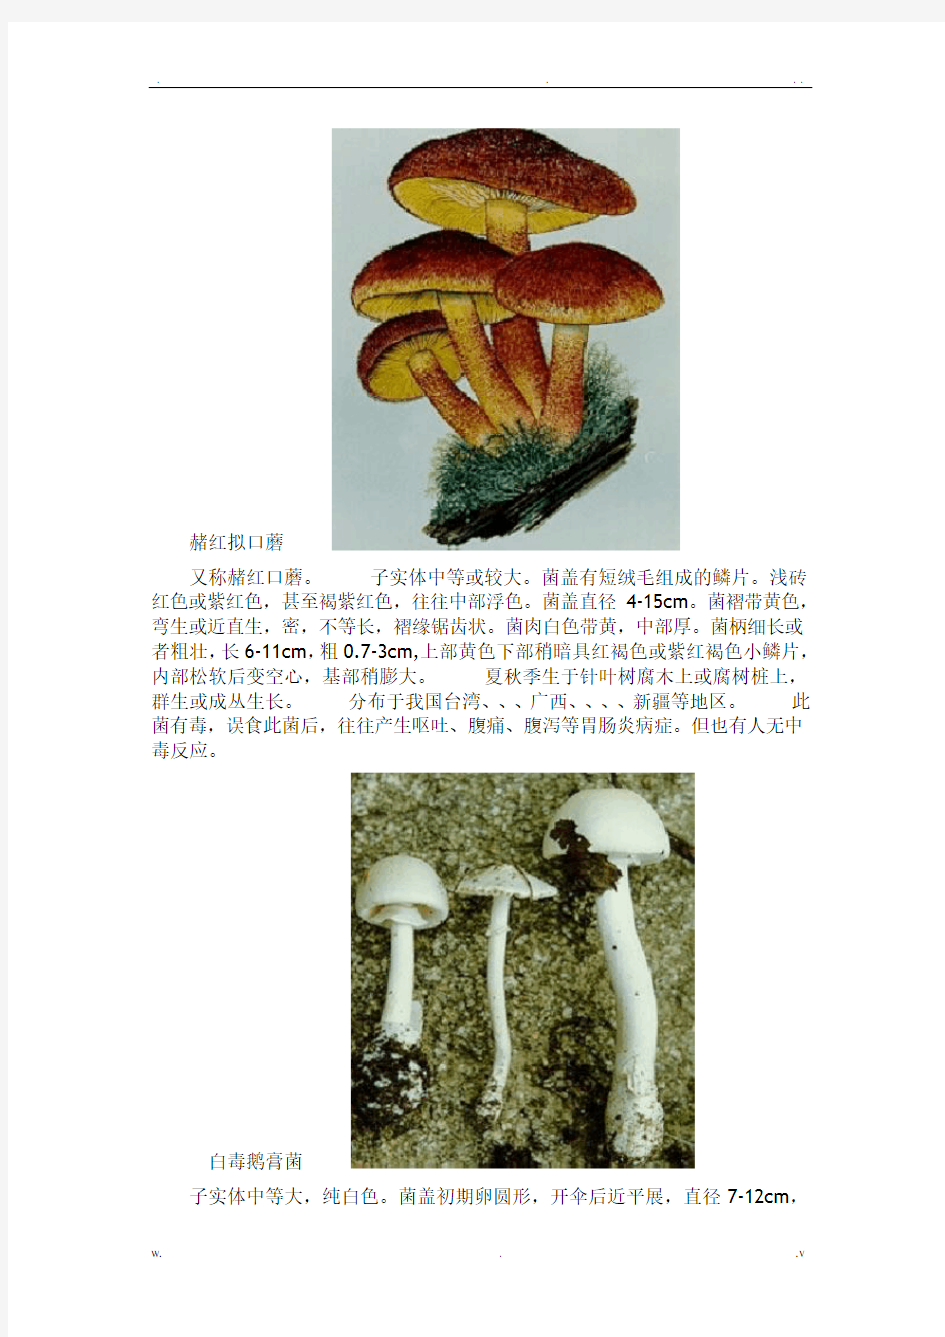 毒蘑菇大全图文-毒蘑菇大全图片-蘑菇大全